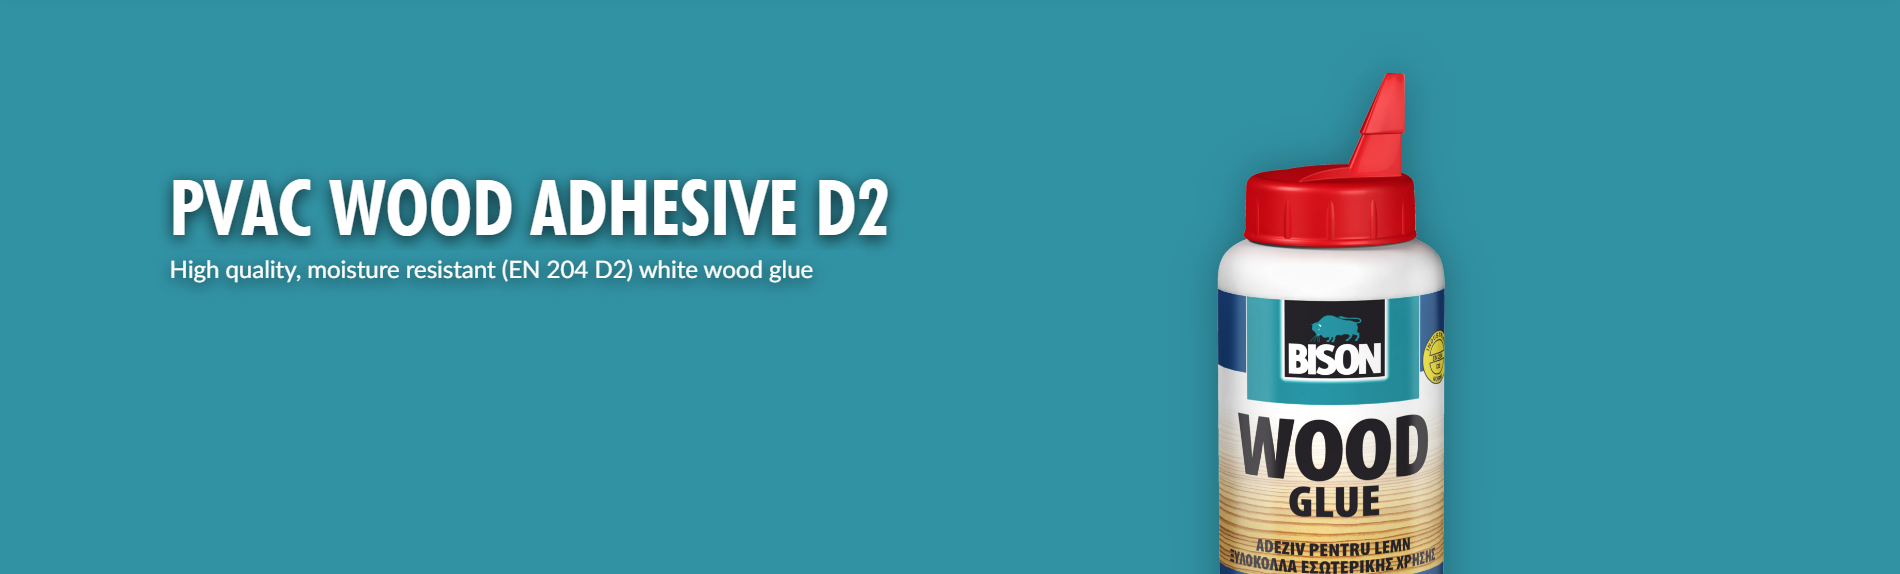 PVAC Wood Glue D2